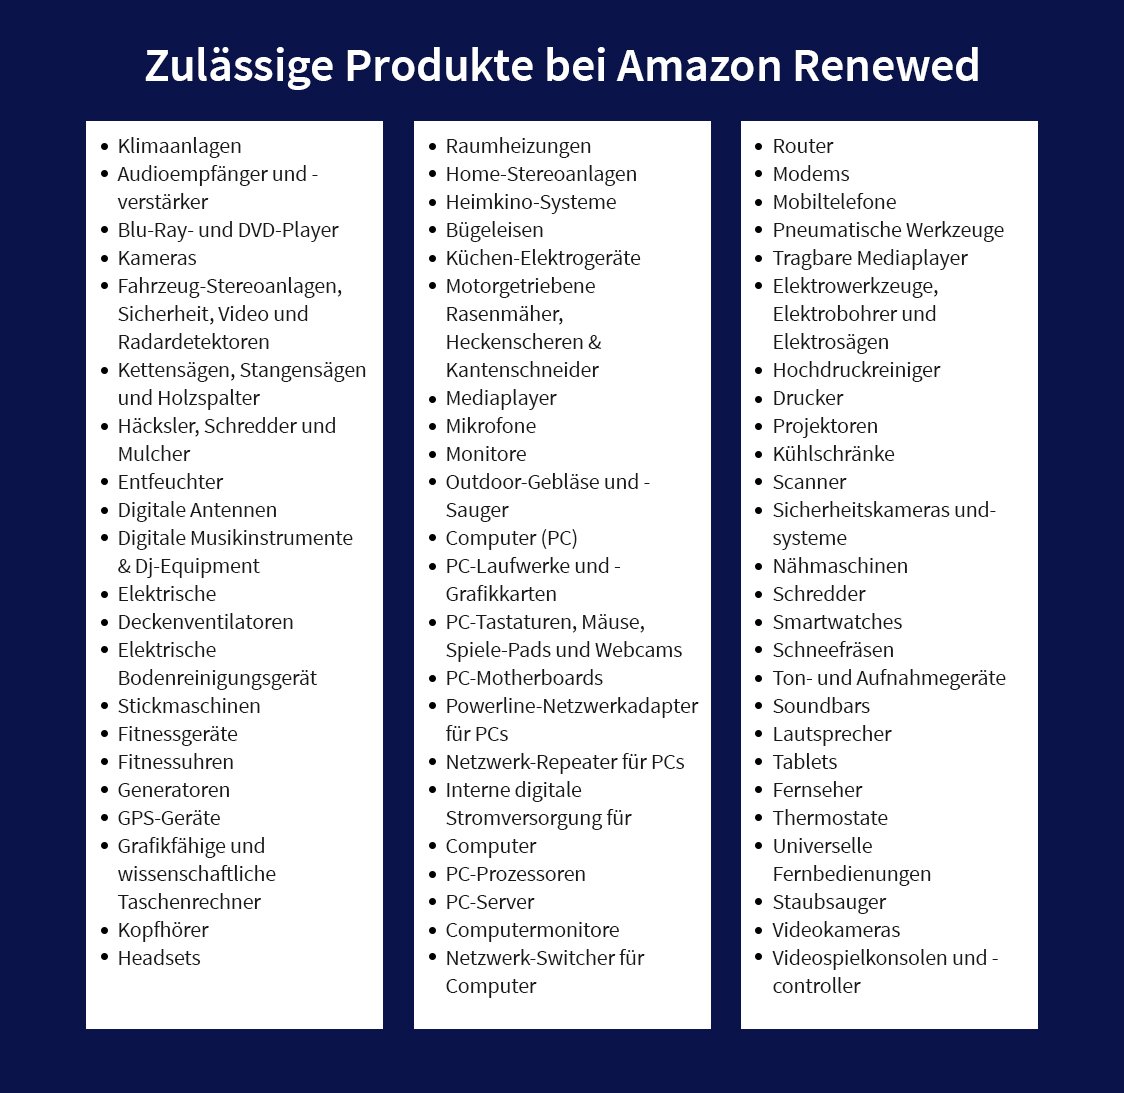 Amazon Renewed erlaubte Produkte